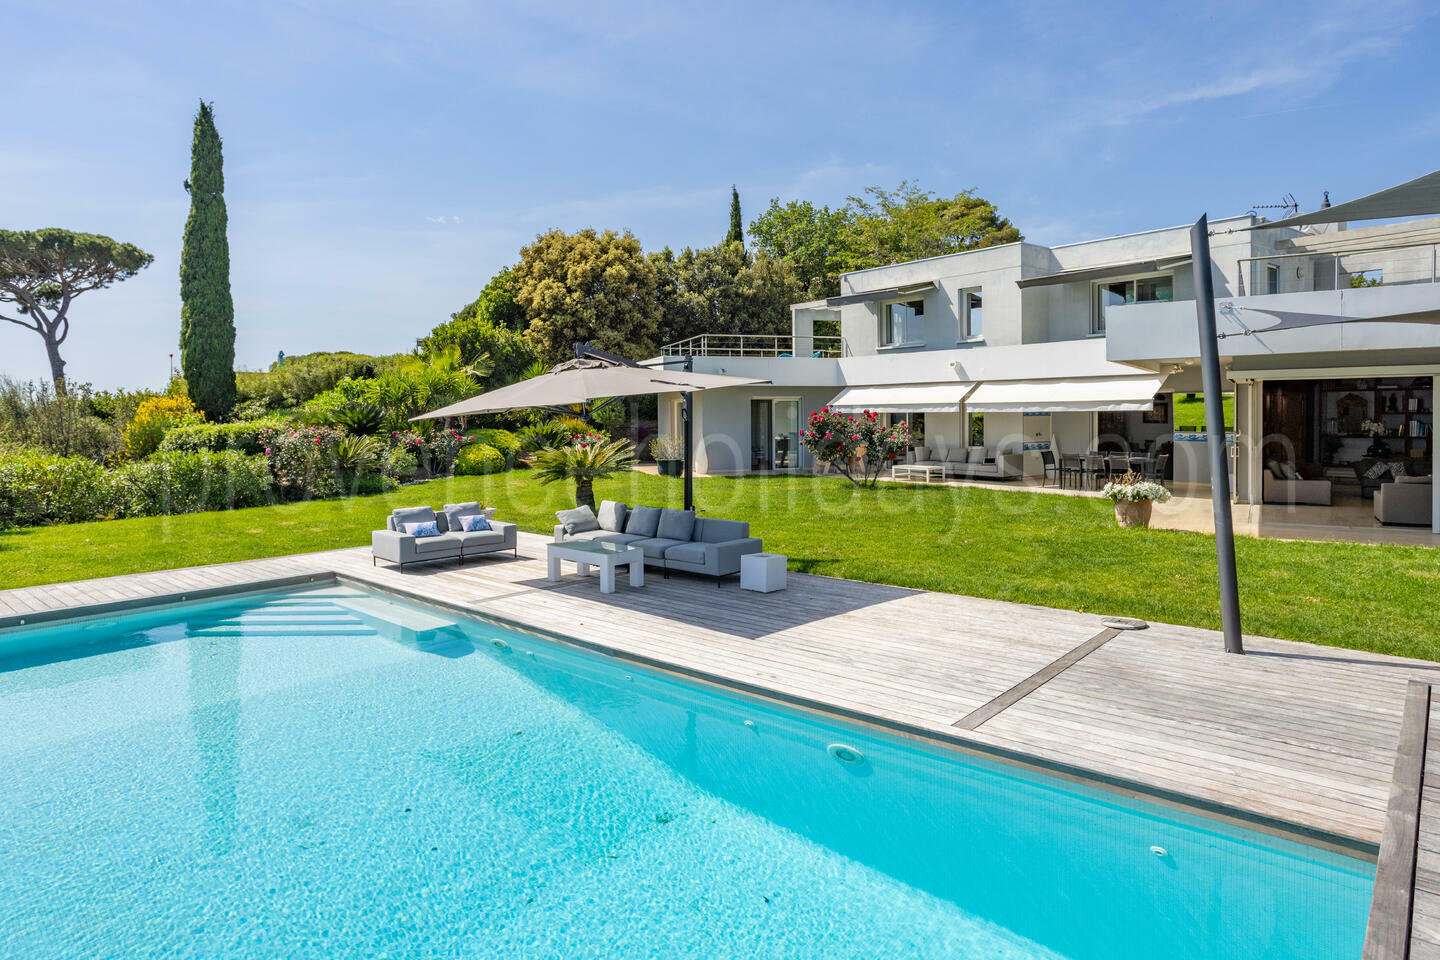 Location de vacances de luxe à seulement 2 km de la plage 1 - Villa Toulon: Villa: Pool